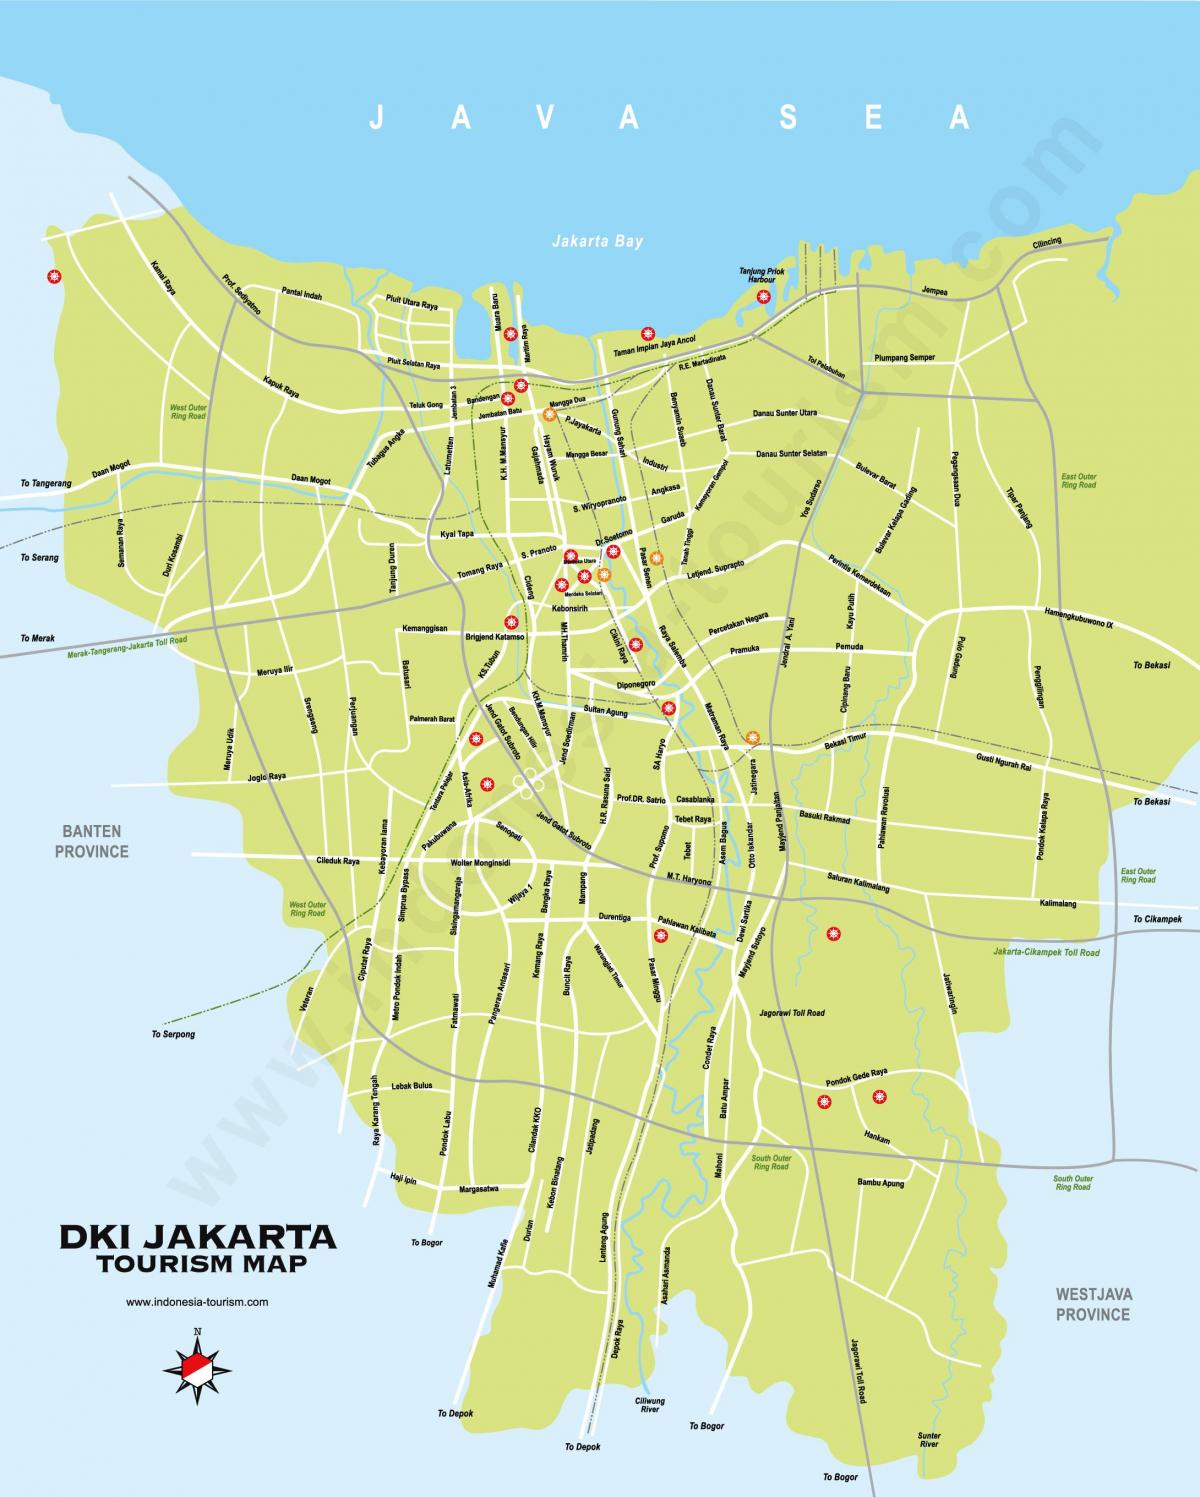 Jakarta sightseeing map